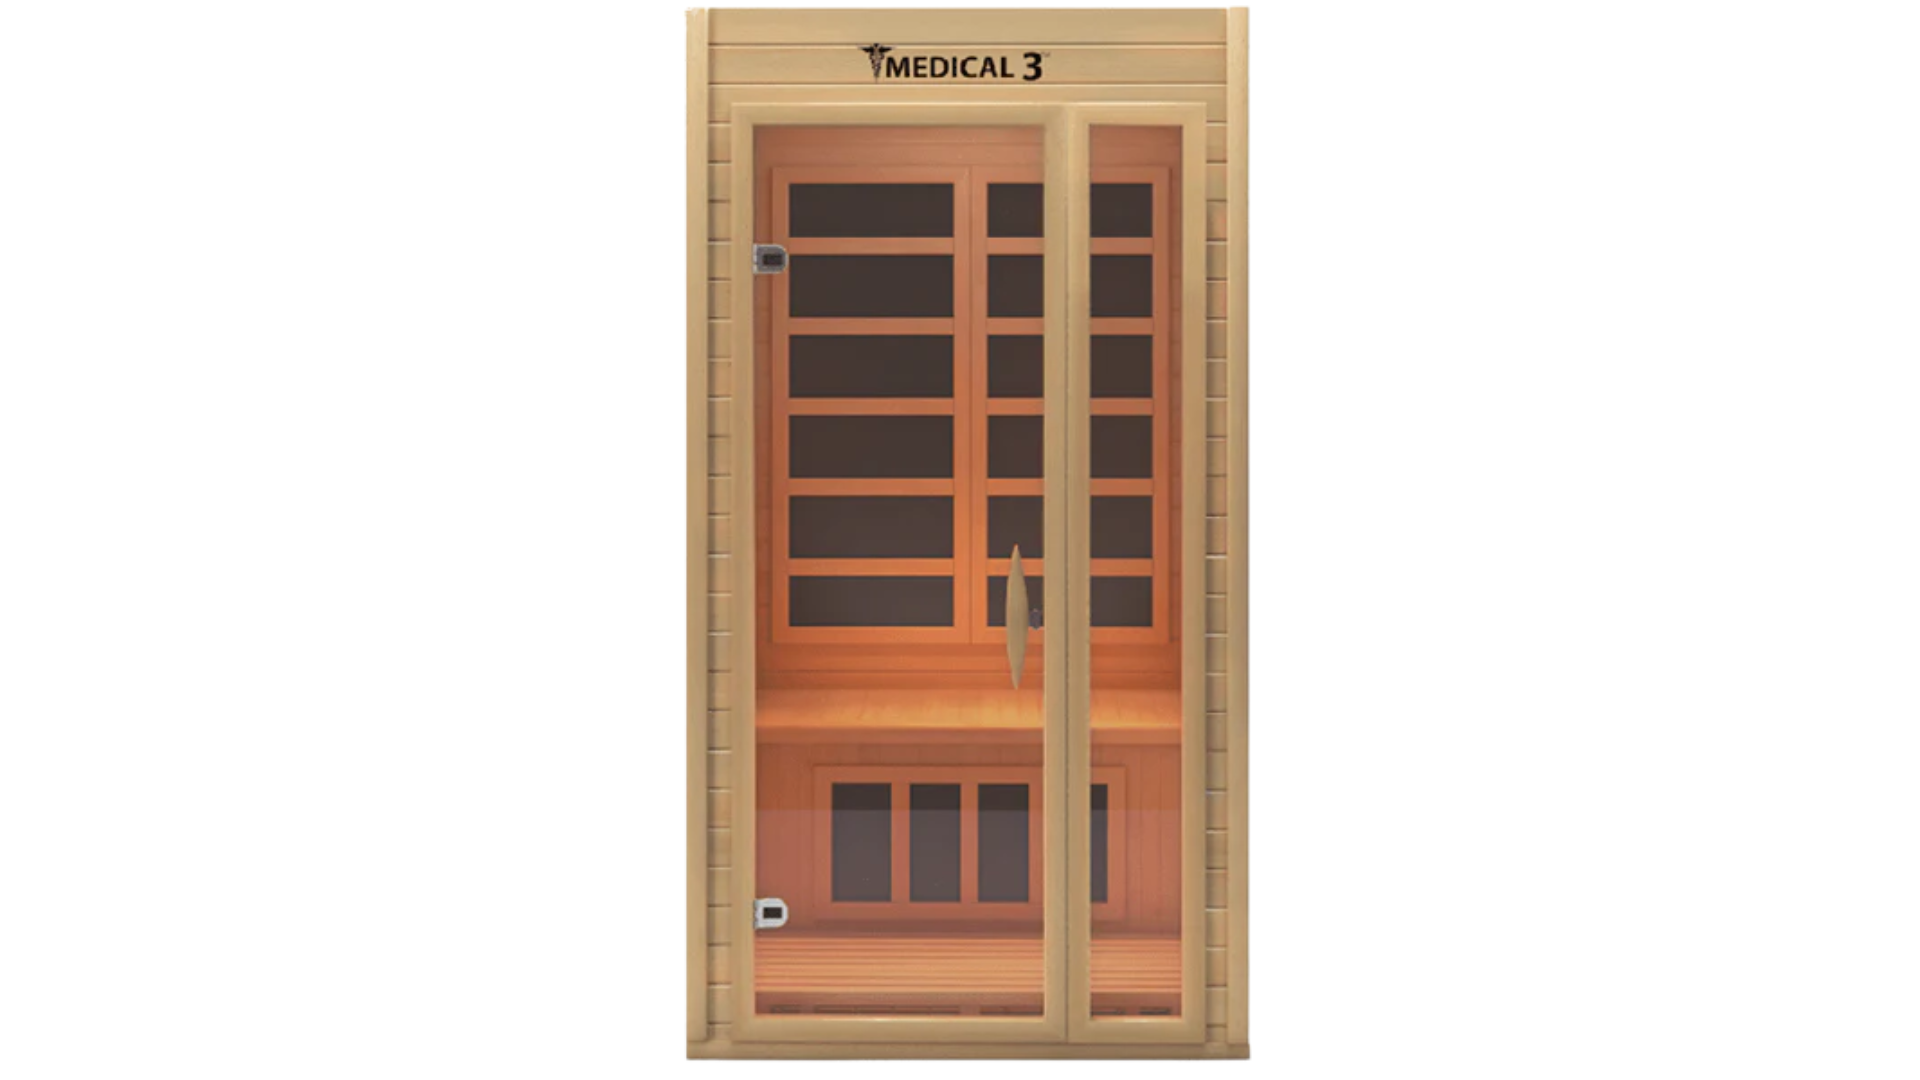 Image of the Medical 3 - Medical Sauna sauna.